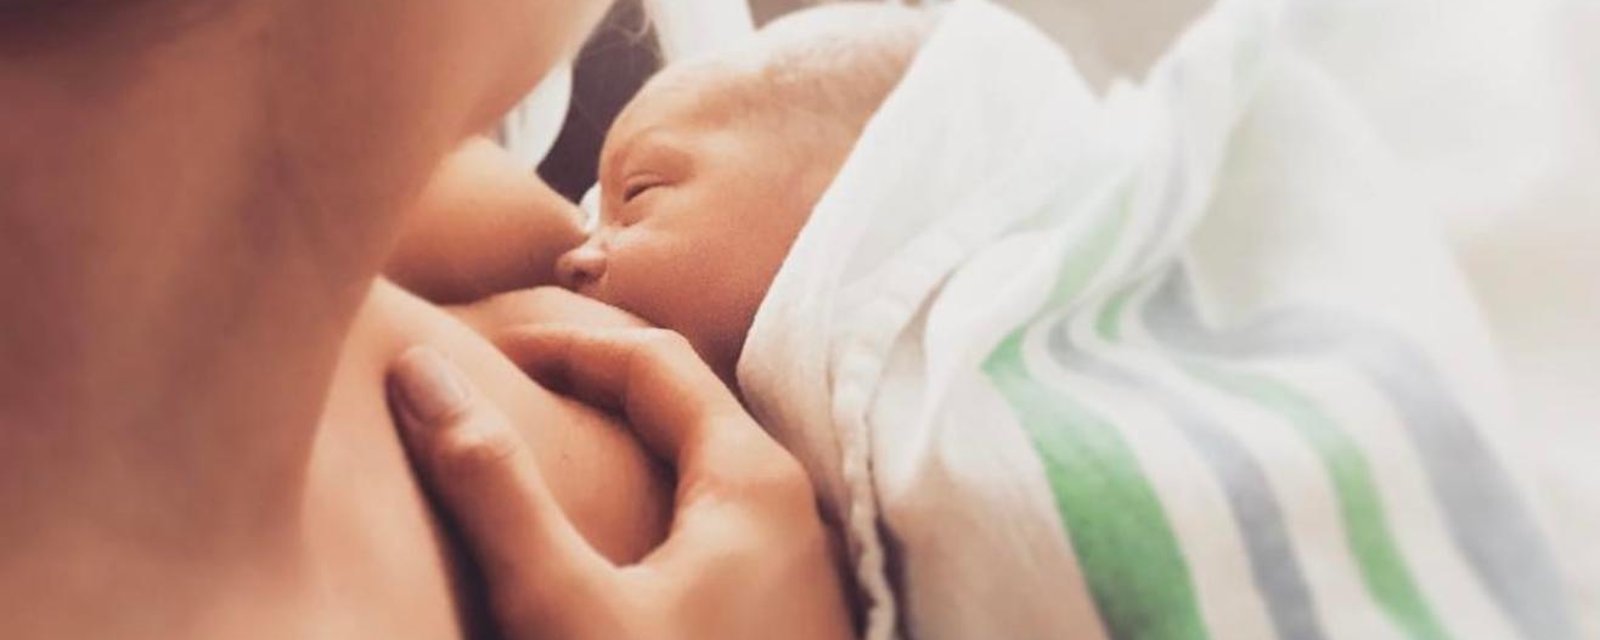 Une populaire actrice québécoise partage une photo d'elle allaitant son fils